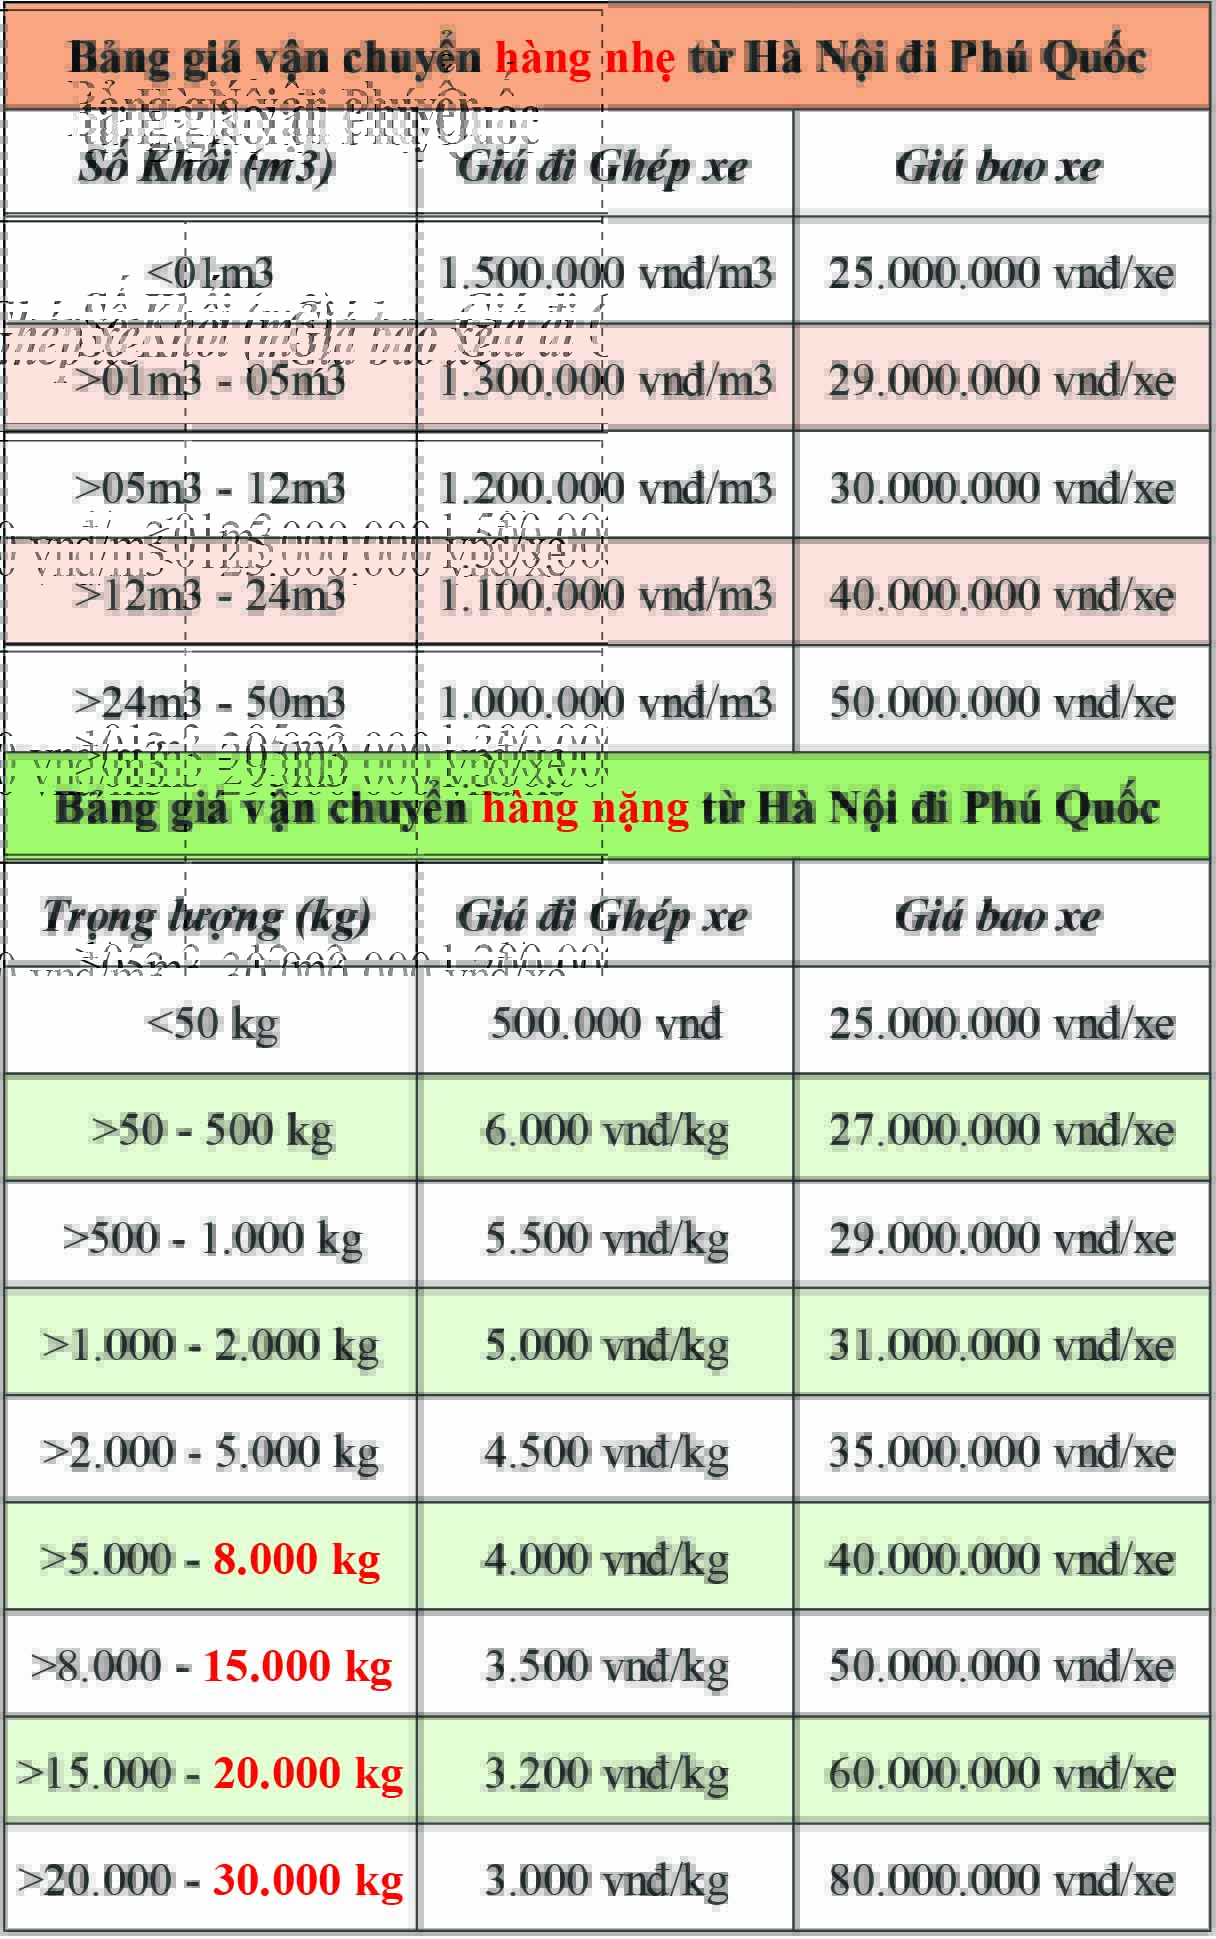 Bảng giá cước phí vận chuyển hàng hóa từ Hà Nội đi Phú Quốc